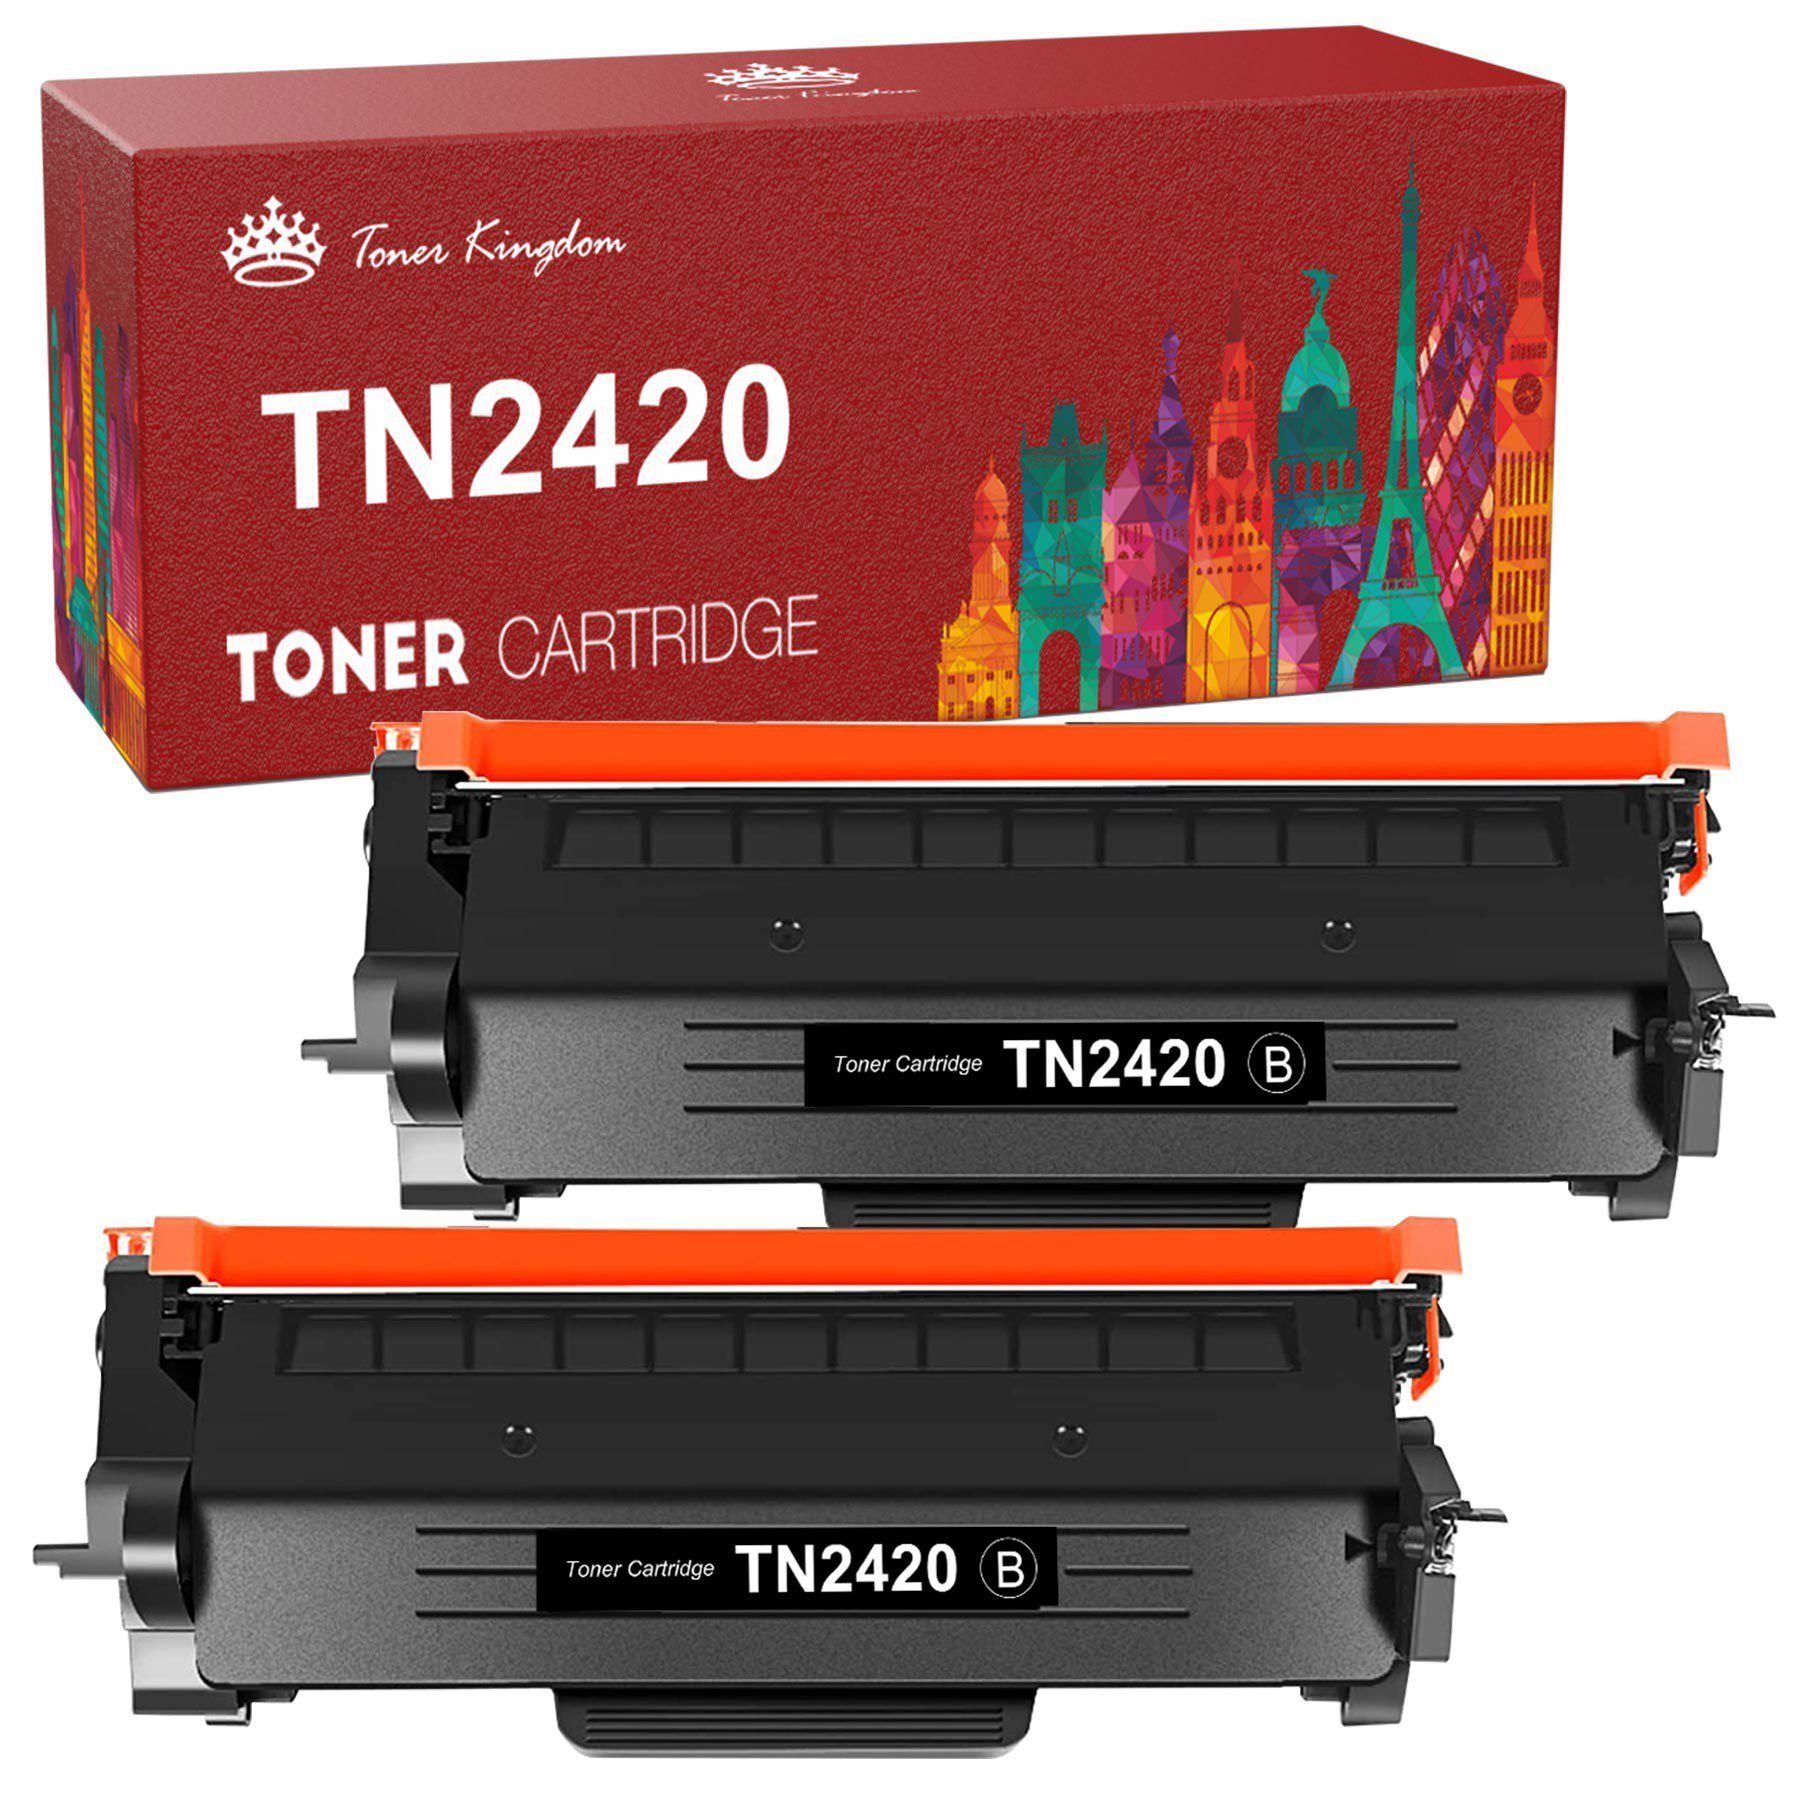 Toner Kingdom Tonerpatrone TN 2420 TN 2320 Kompatible XXL Toner für Brother TN2420 TN2320